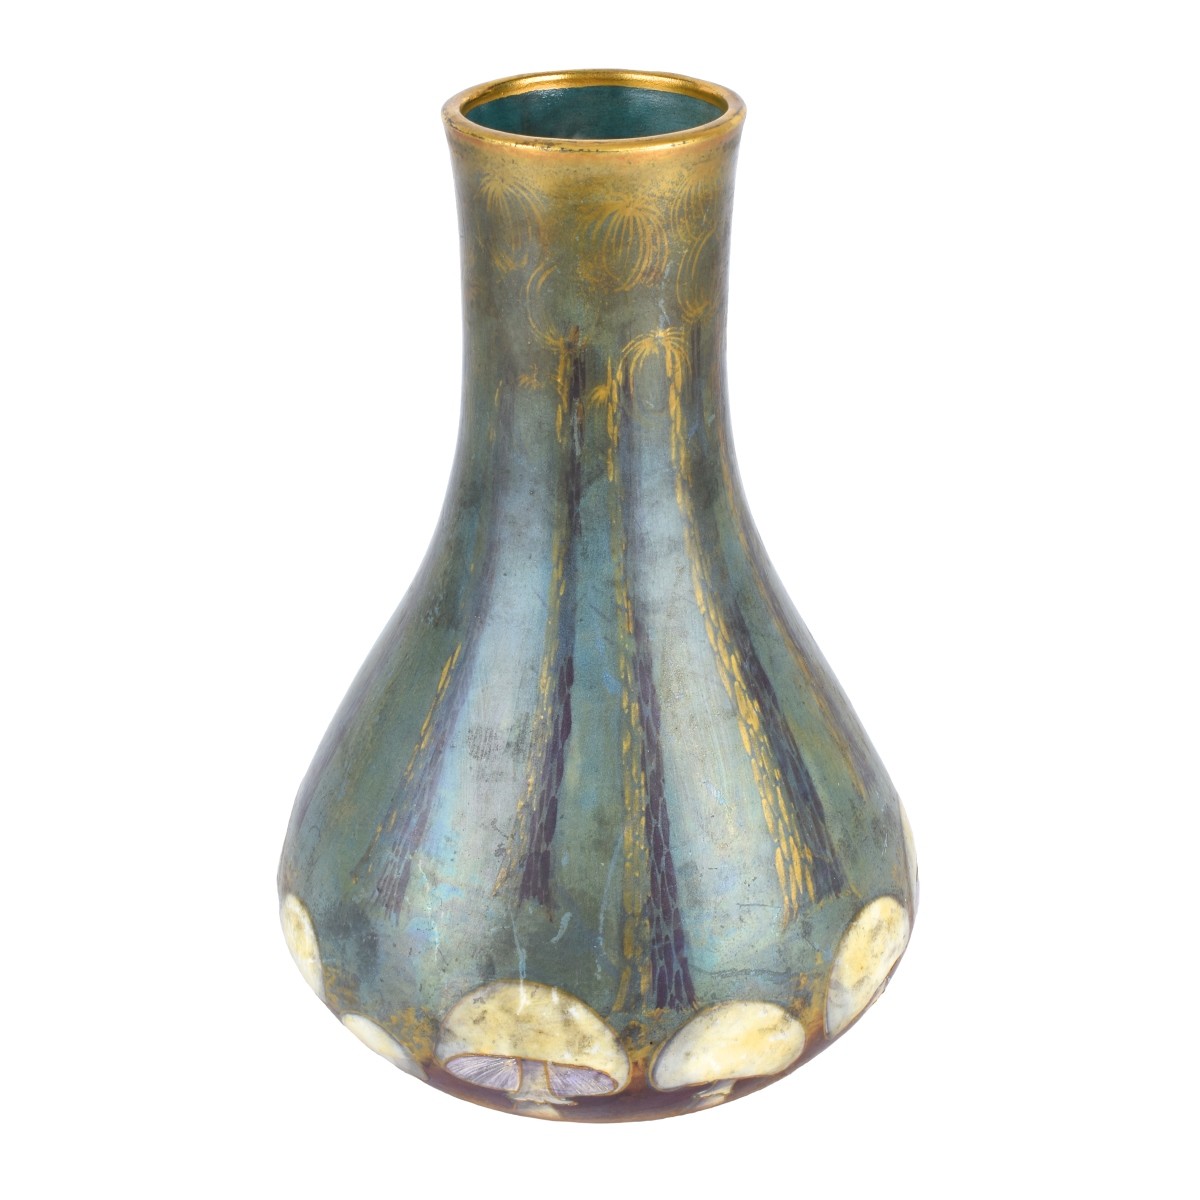 Amphora Turn Teplitz Mushroom Pottery Vase - Image 2 of 5